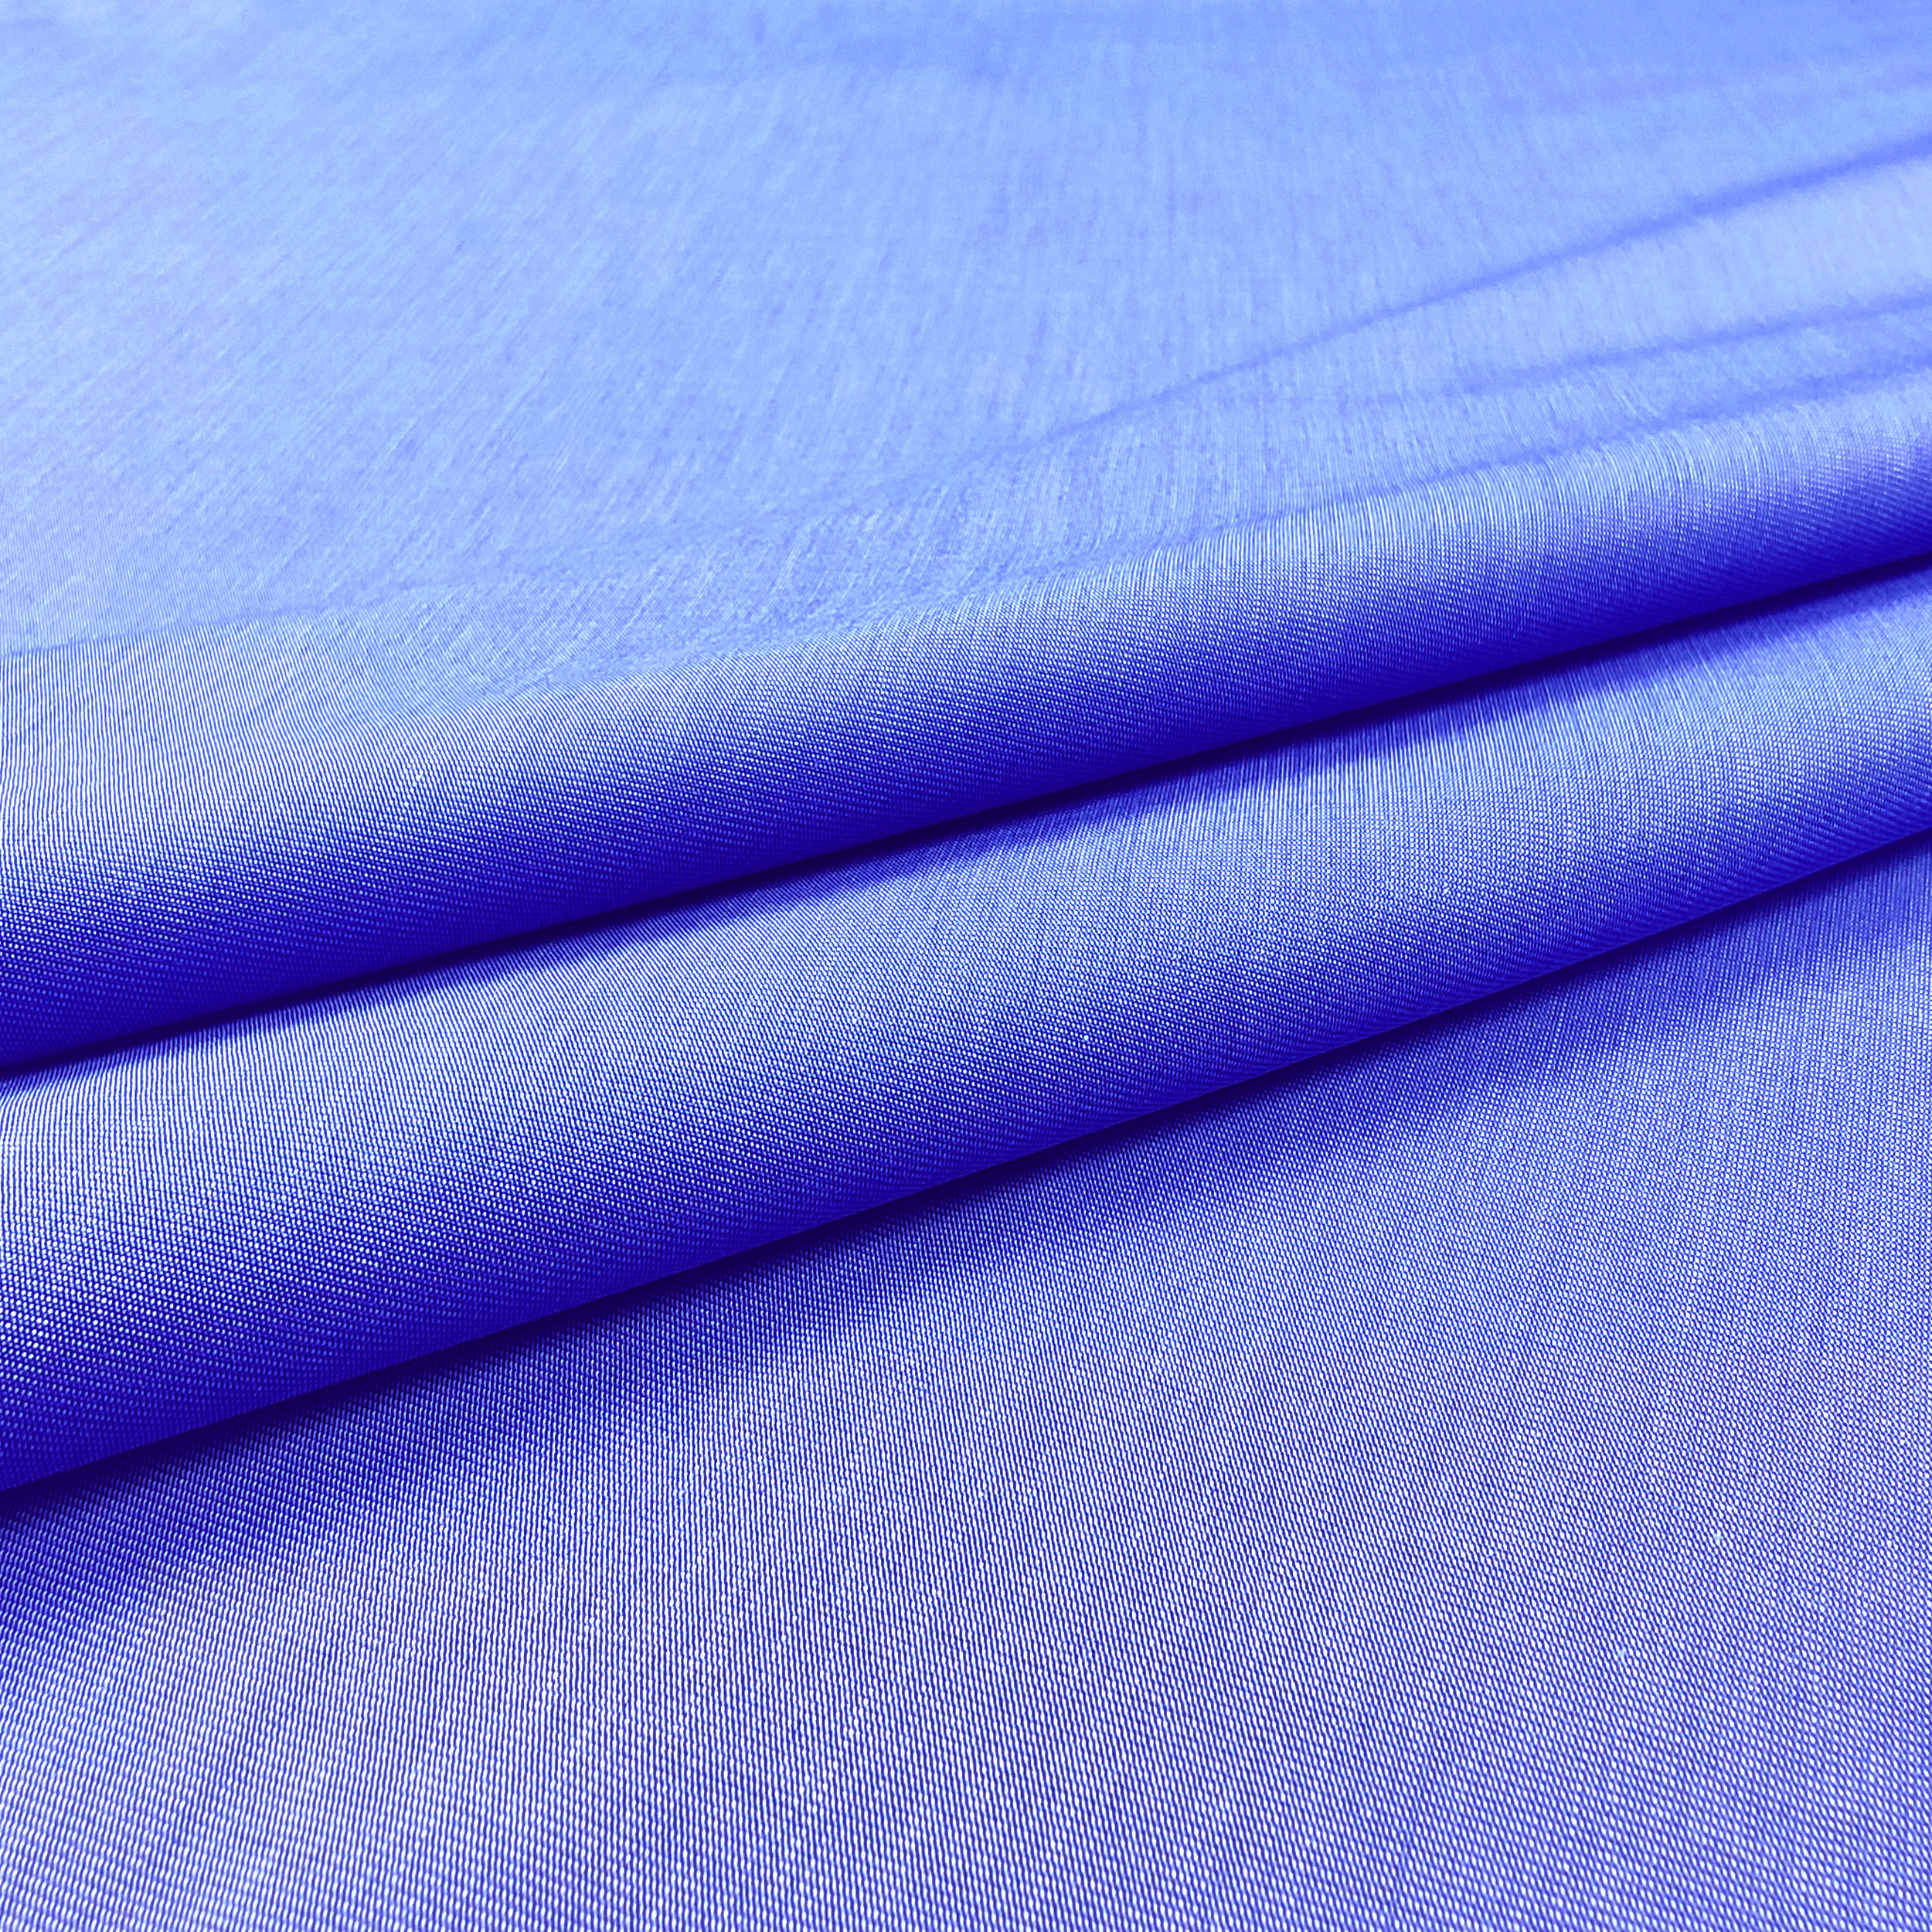 cotone per camicia azzurro (1)